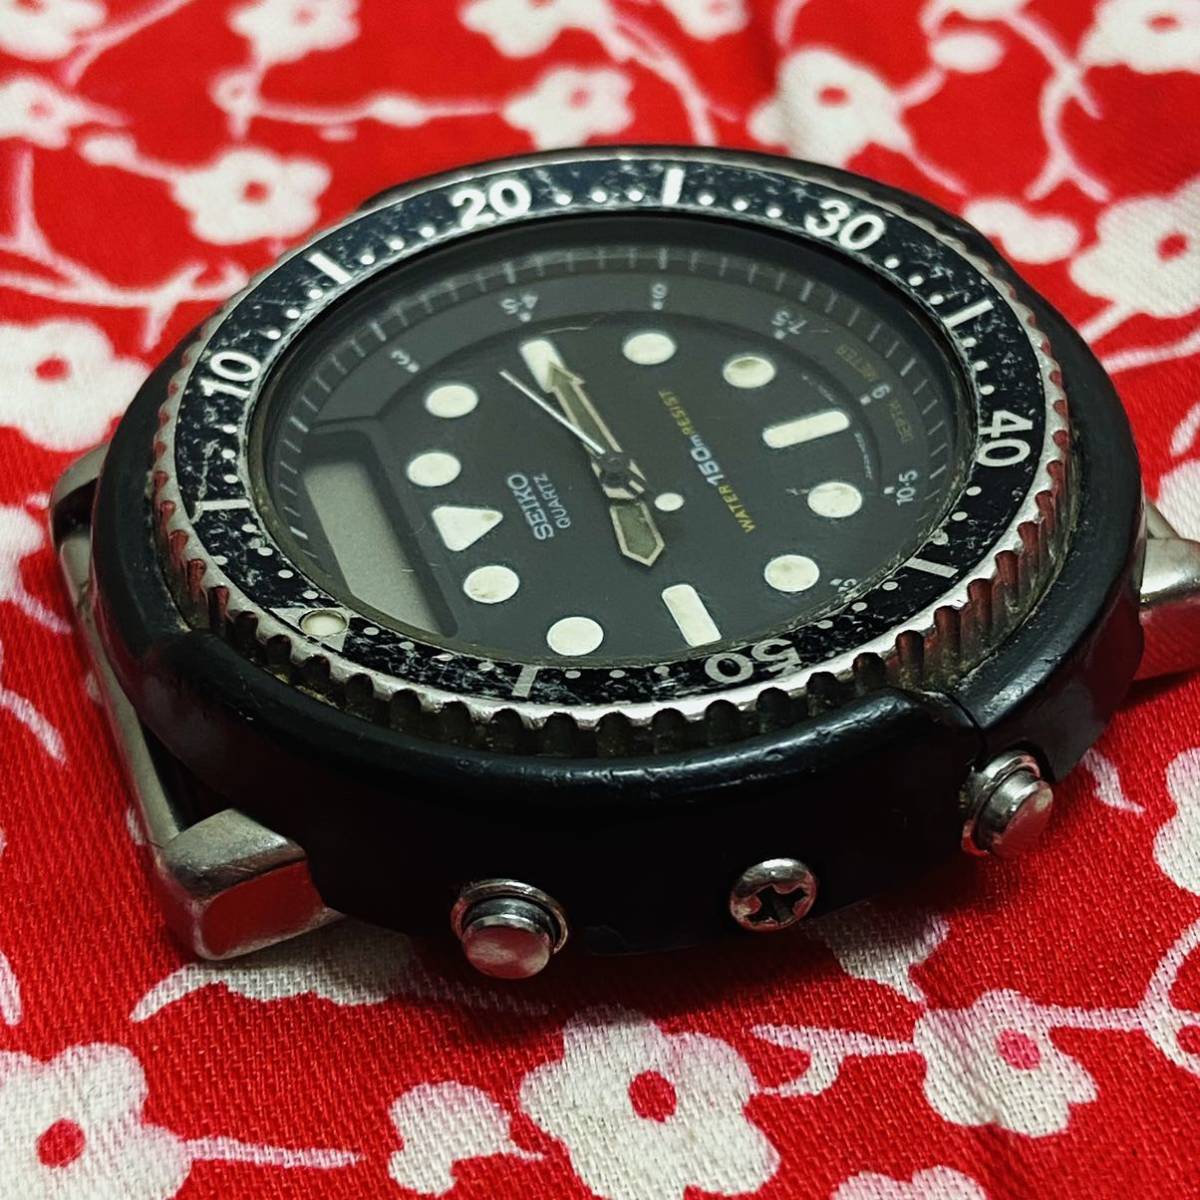 SEIKOセイコーH558-5000ビンテージ150mハイブリッド ダイバー腕 時計ARNIEアーニーブラック×シルバー系現状品_画像3